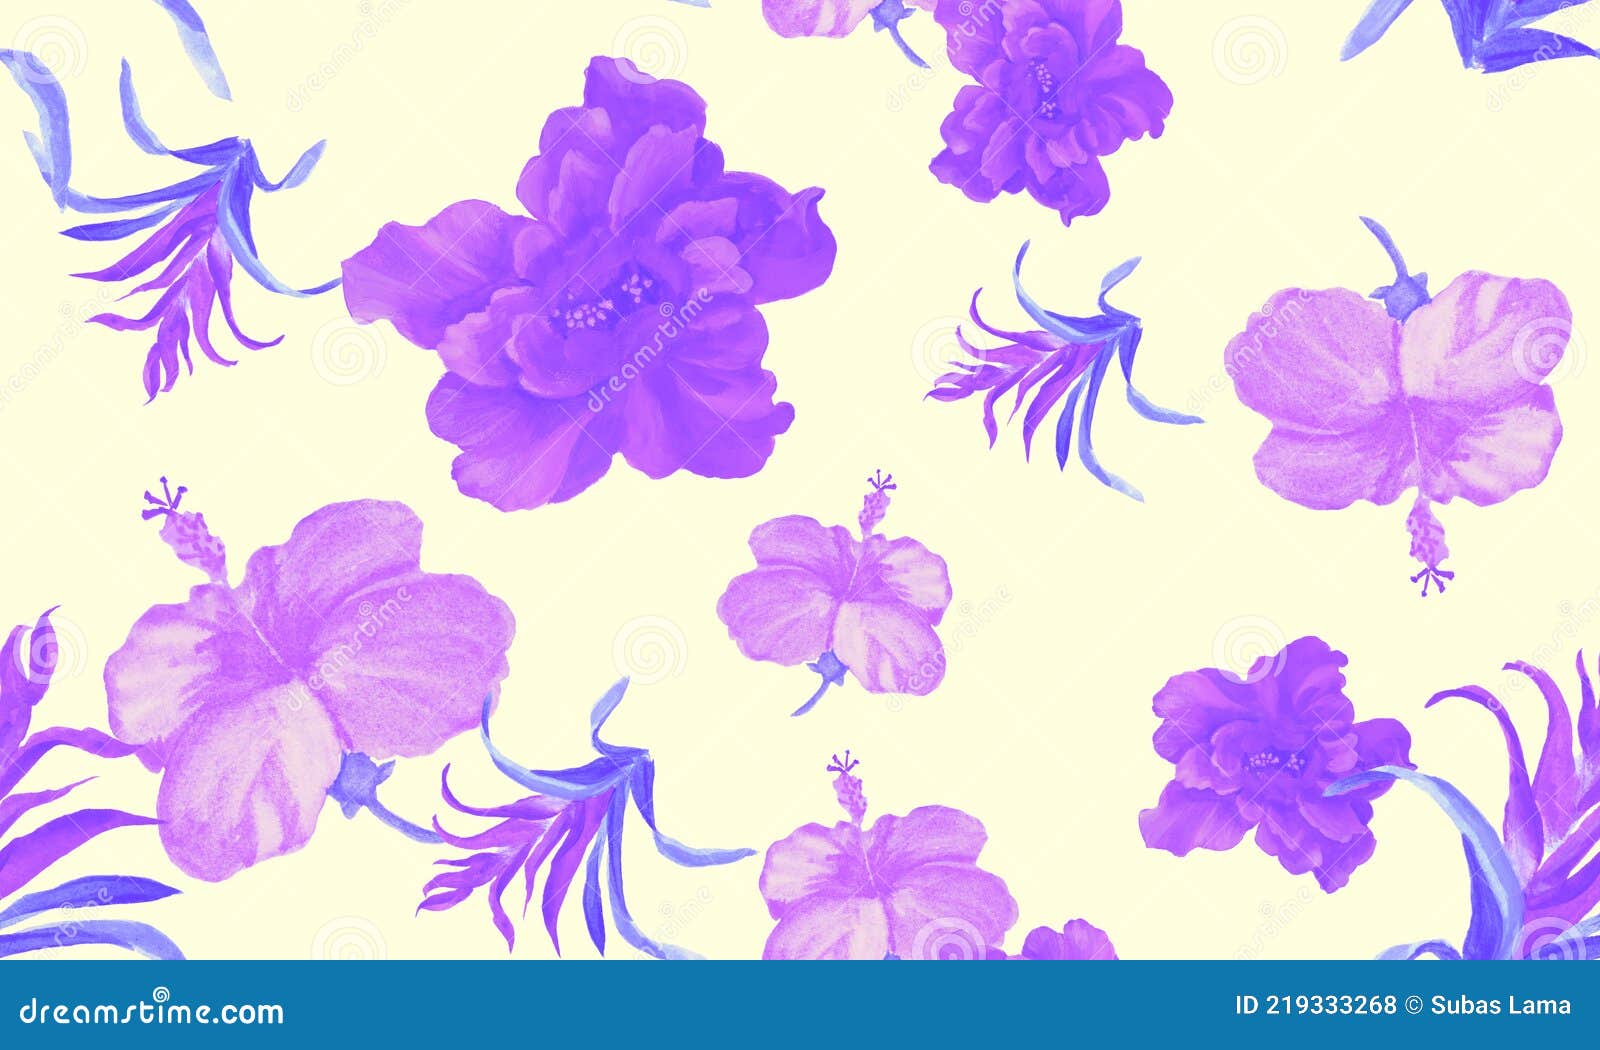 Impression Vanille Hibiscus. Textile De Fleur Violette. Impression  Transparente Rose. Plante D'aquarelle Violette. Jeu De Motifs. Illustration  Stock - Illustration du configuration, succulent: 219333268